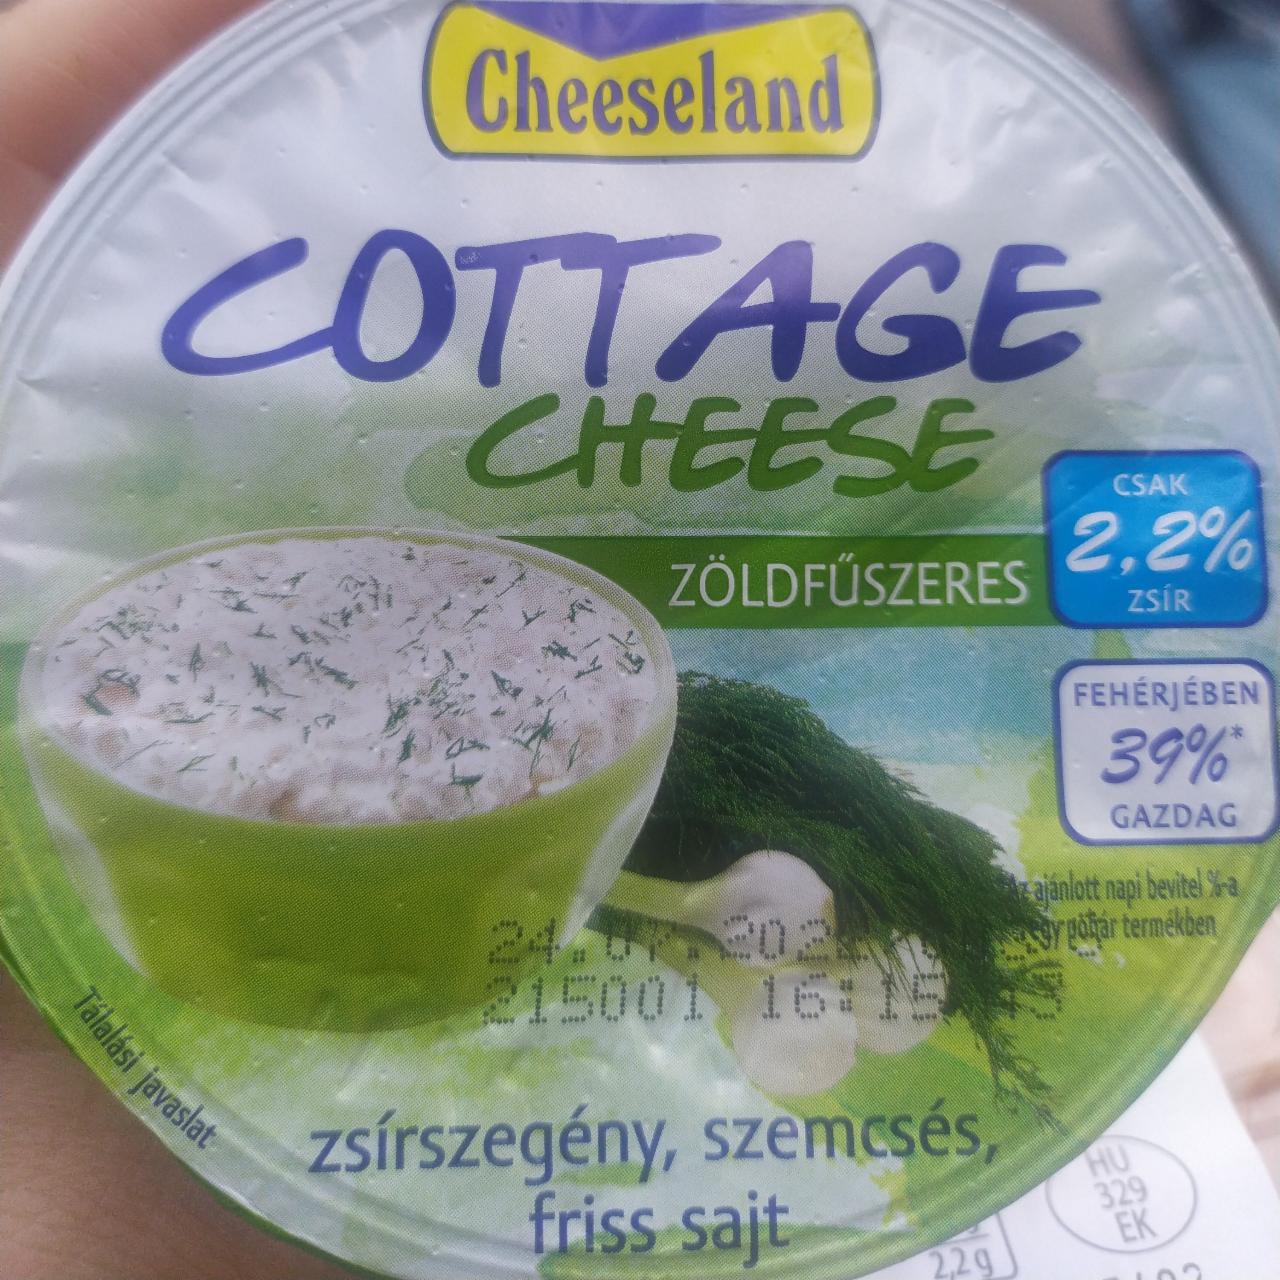 Képek - Cottage cheese zöldfűszeres Cheeseland